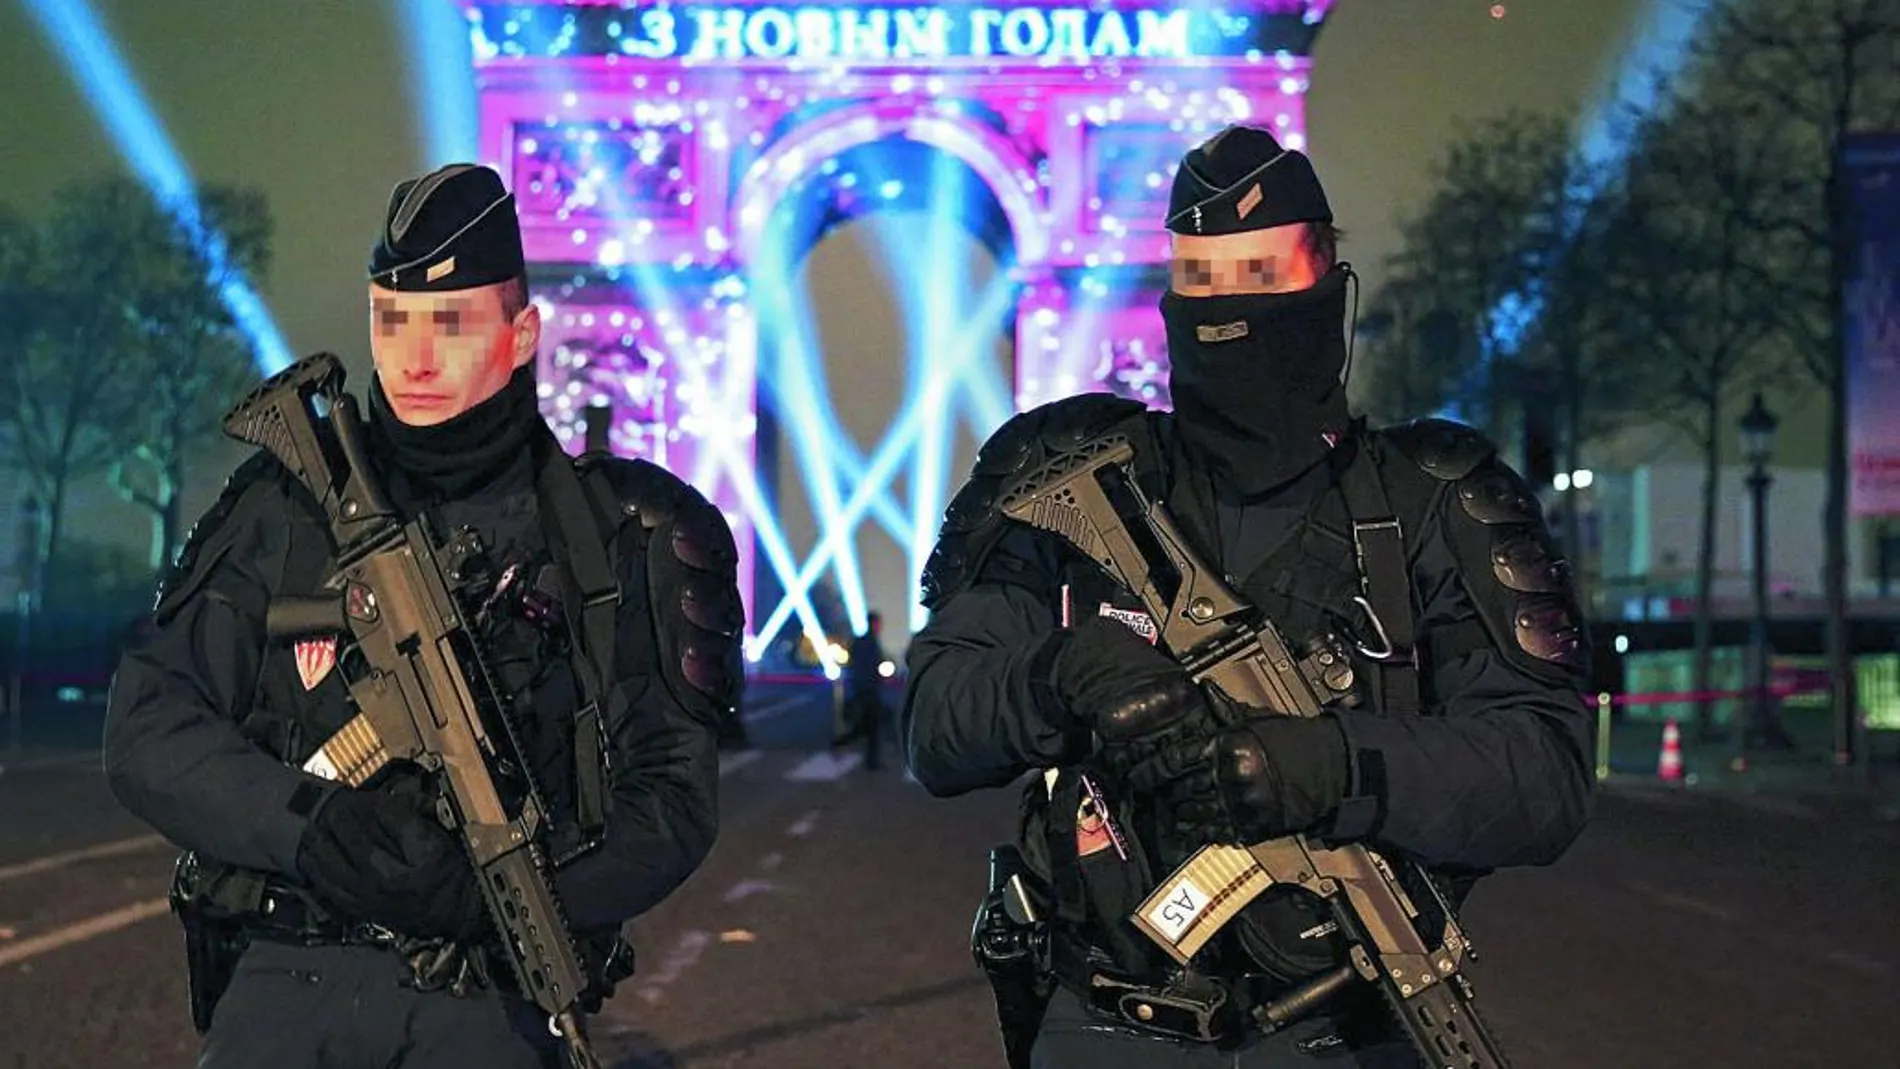 Dos policías franceses patrullan los Campos Elíseos durante la Nochevieja